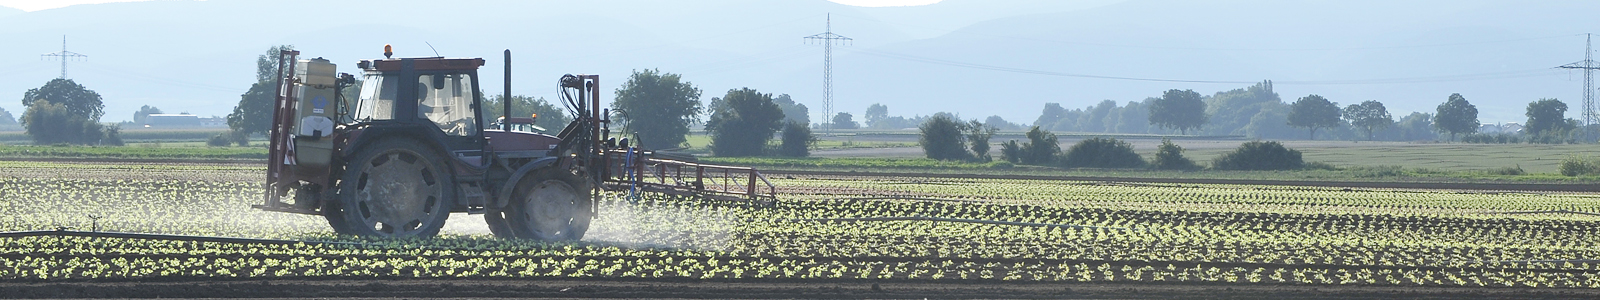 Traktor bringt Pflanzenschutzmittel auf Gemüsefeld aus ©DLR